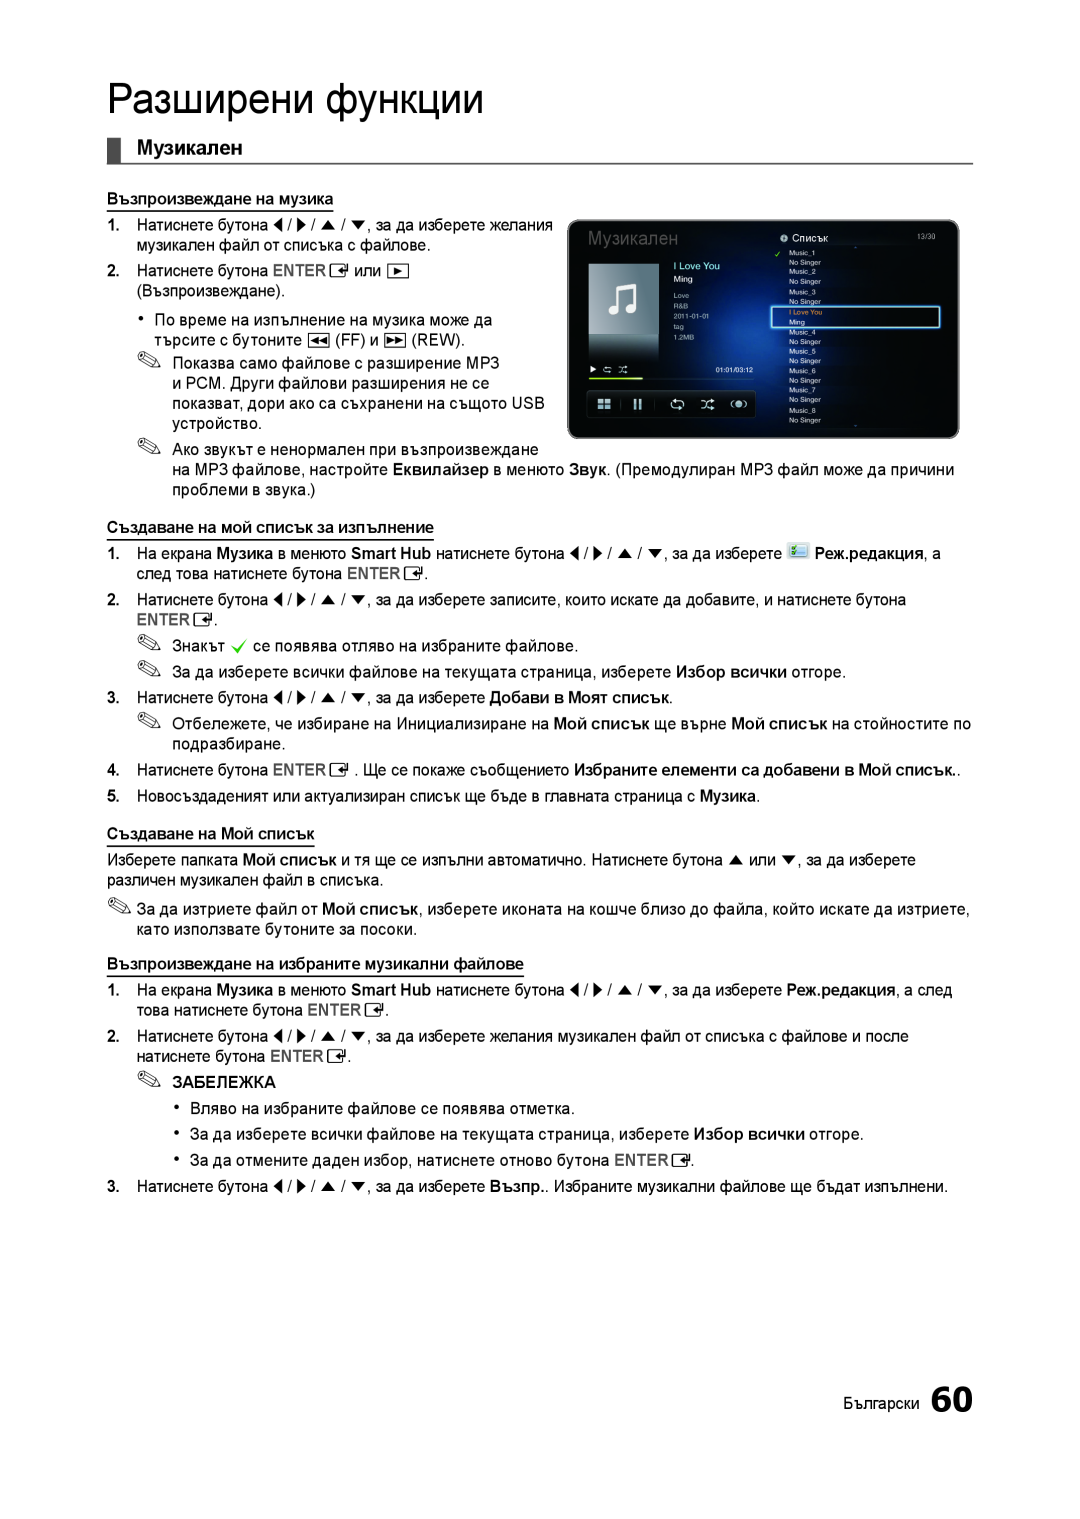 Samsung LT27A750EX/EN manual Разширени функции, Музикален, Възпроизвеждане на музика, Създаване на мой списък за изпълнение 